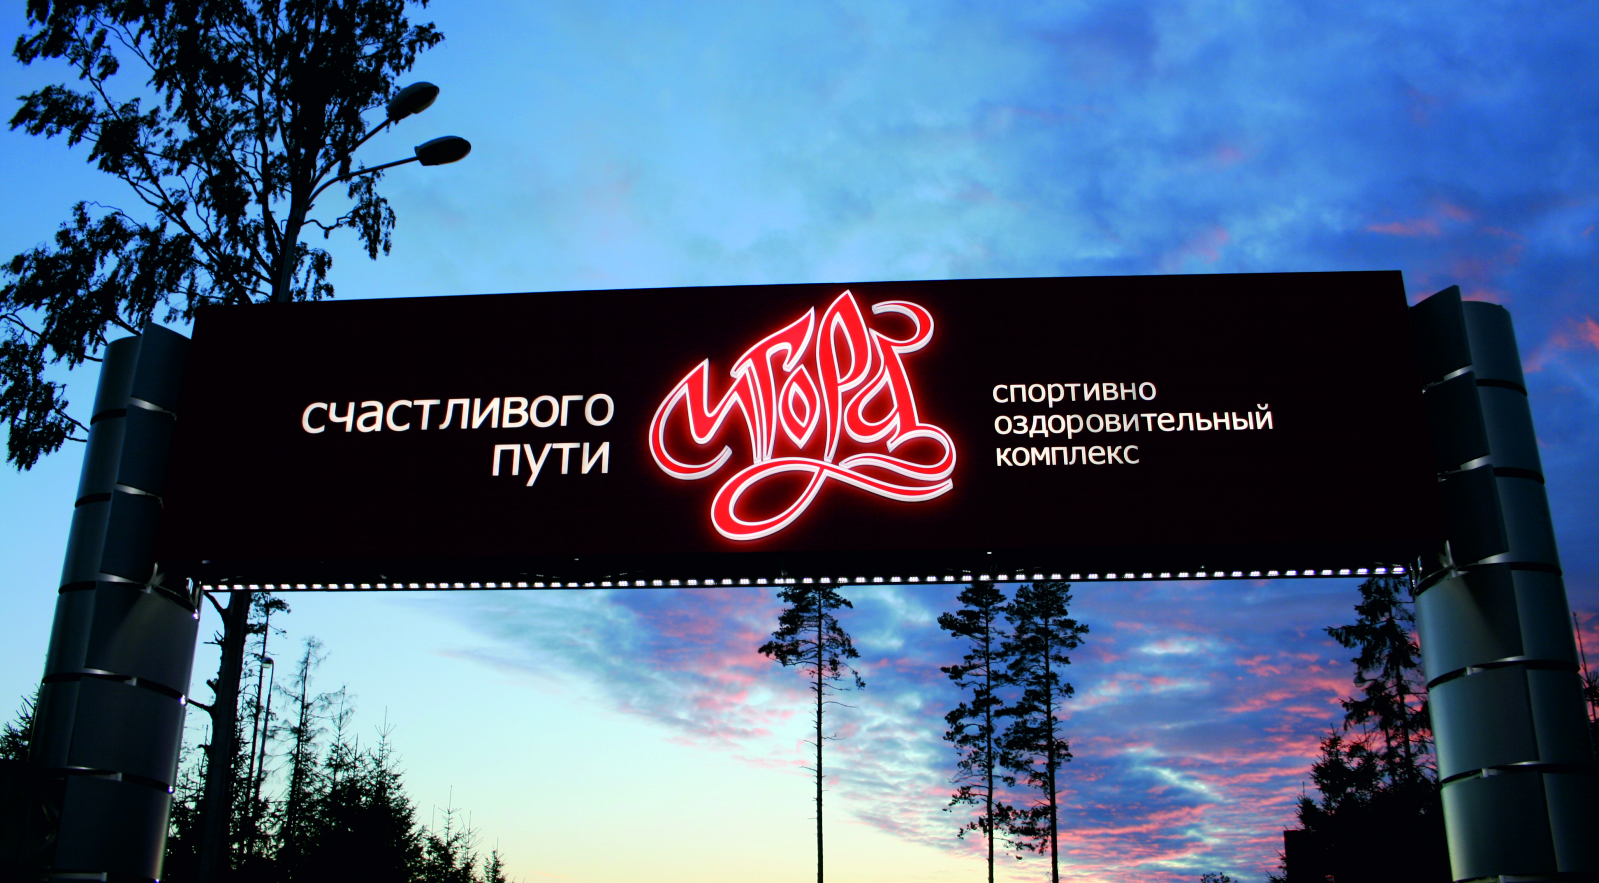 Въездная арка курорта Игора, Ленинградская область